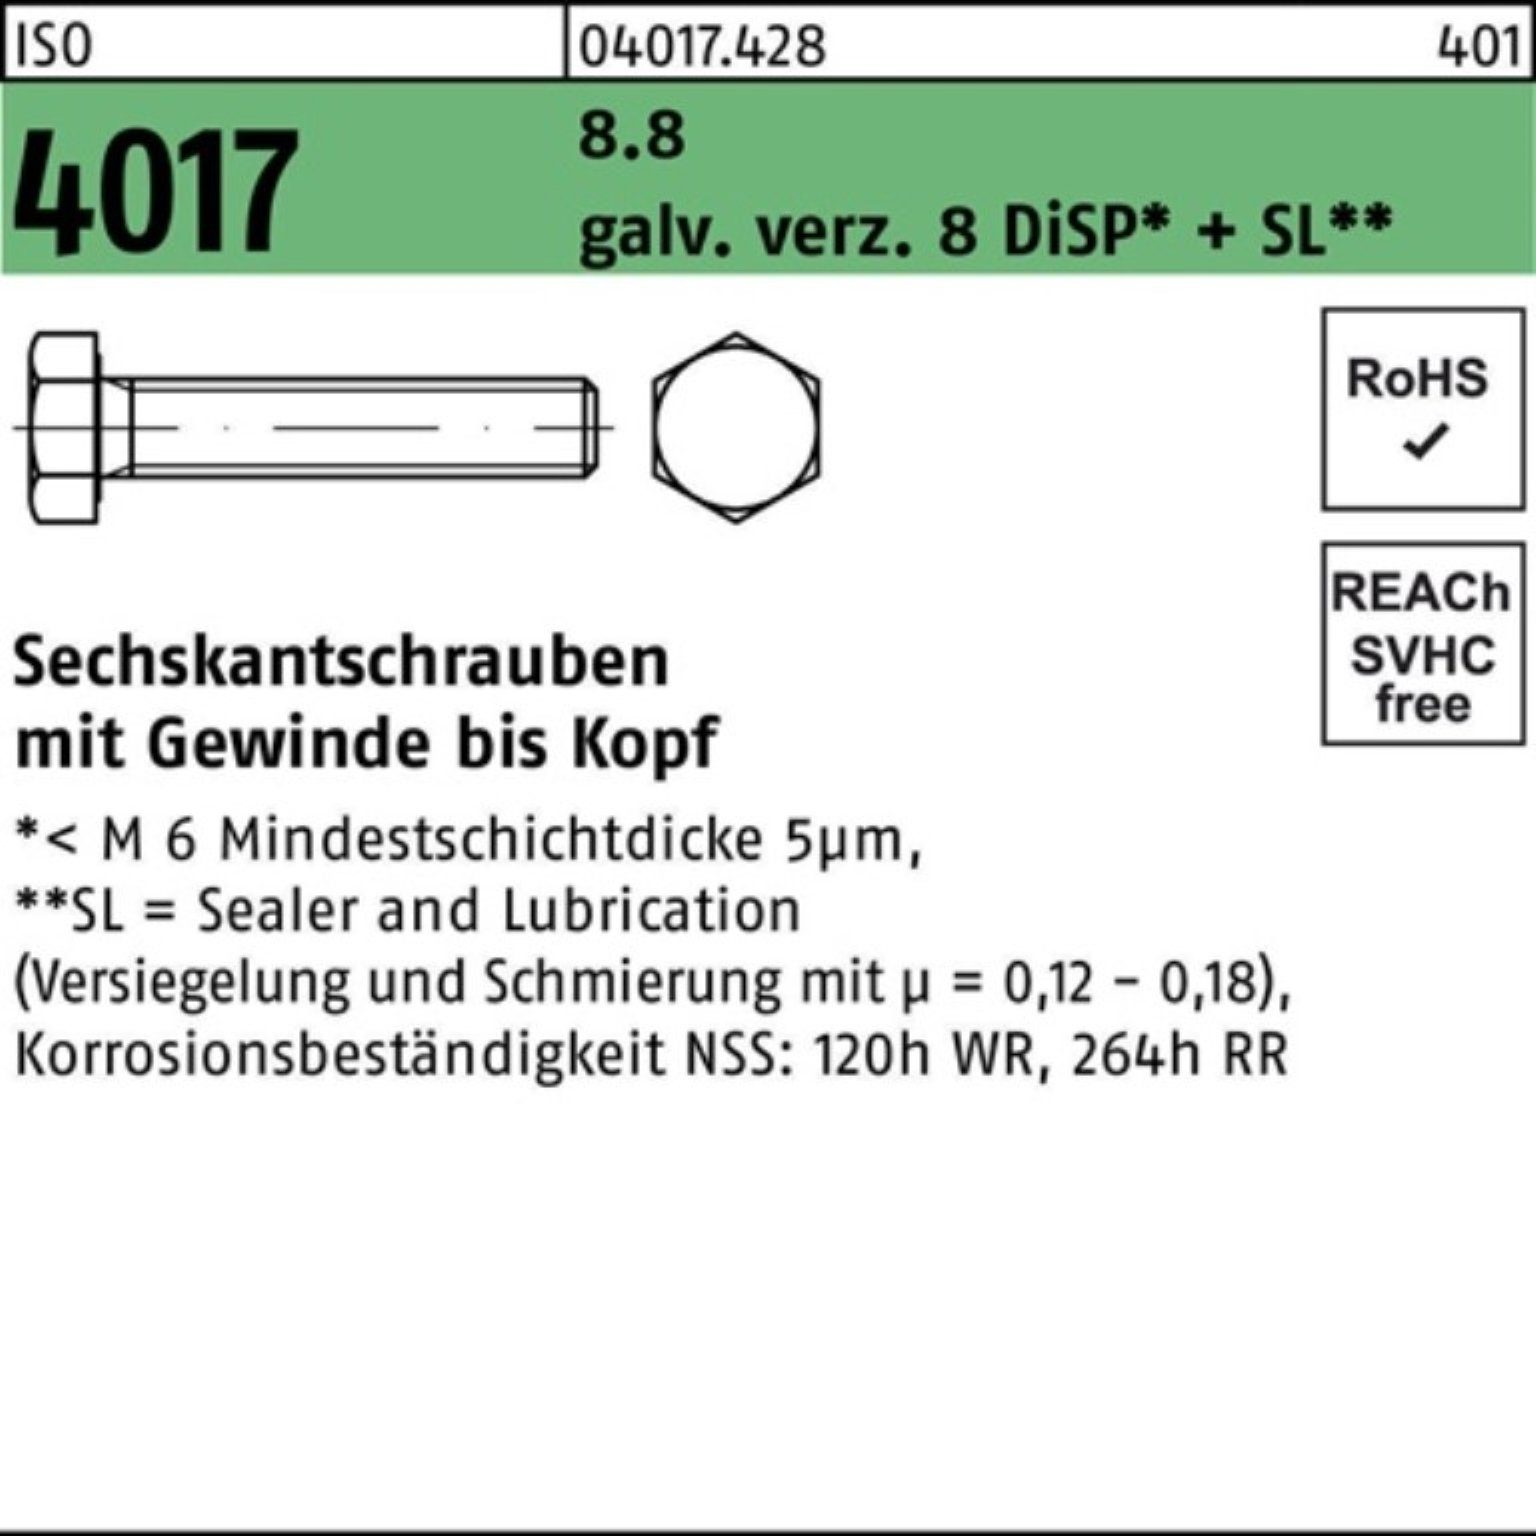 35 galv.verz. 4017 Bufab 100er DiSP ISO Sechskantschraube M16x 8 Sechskantschraube Pack VG 8.8